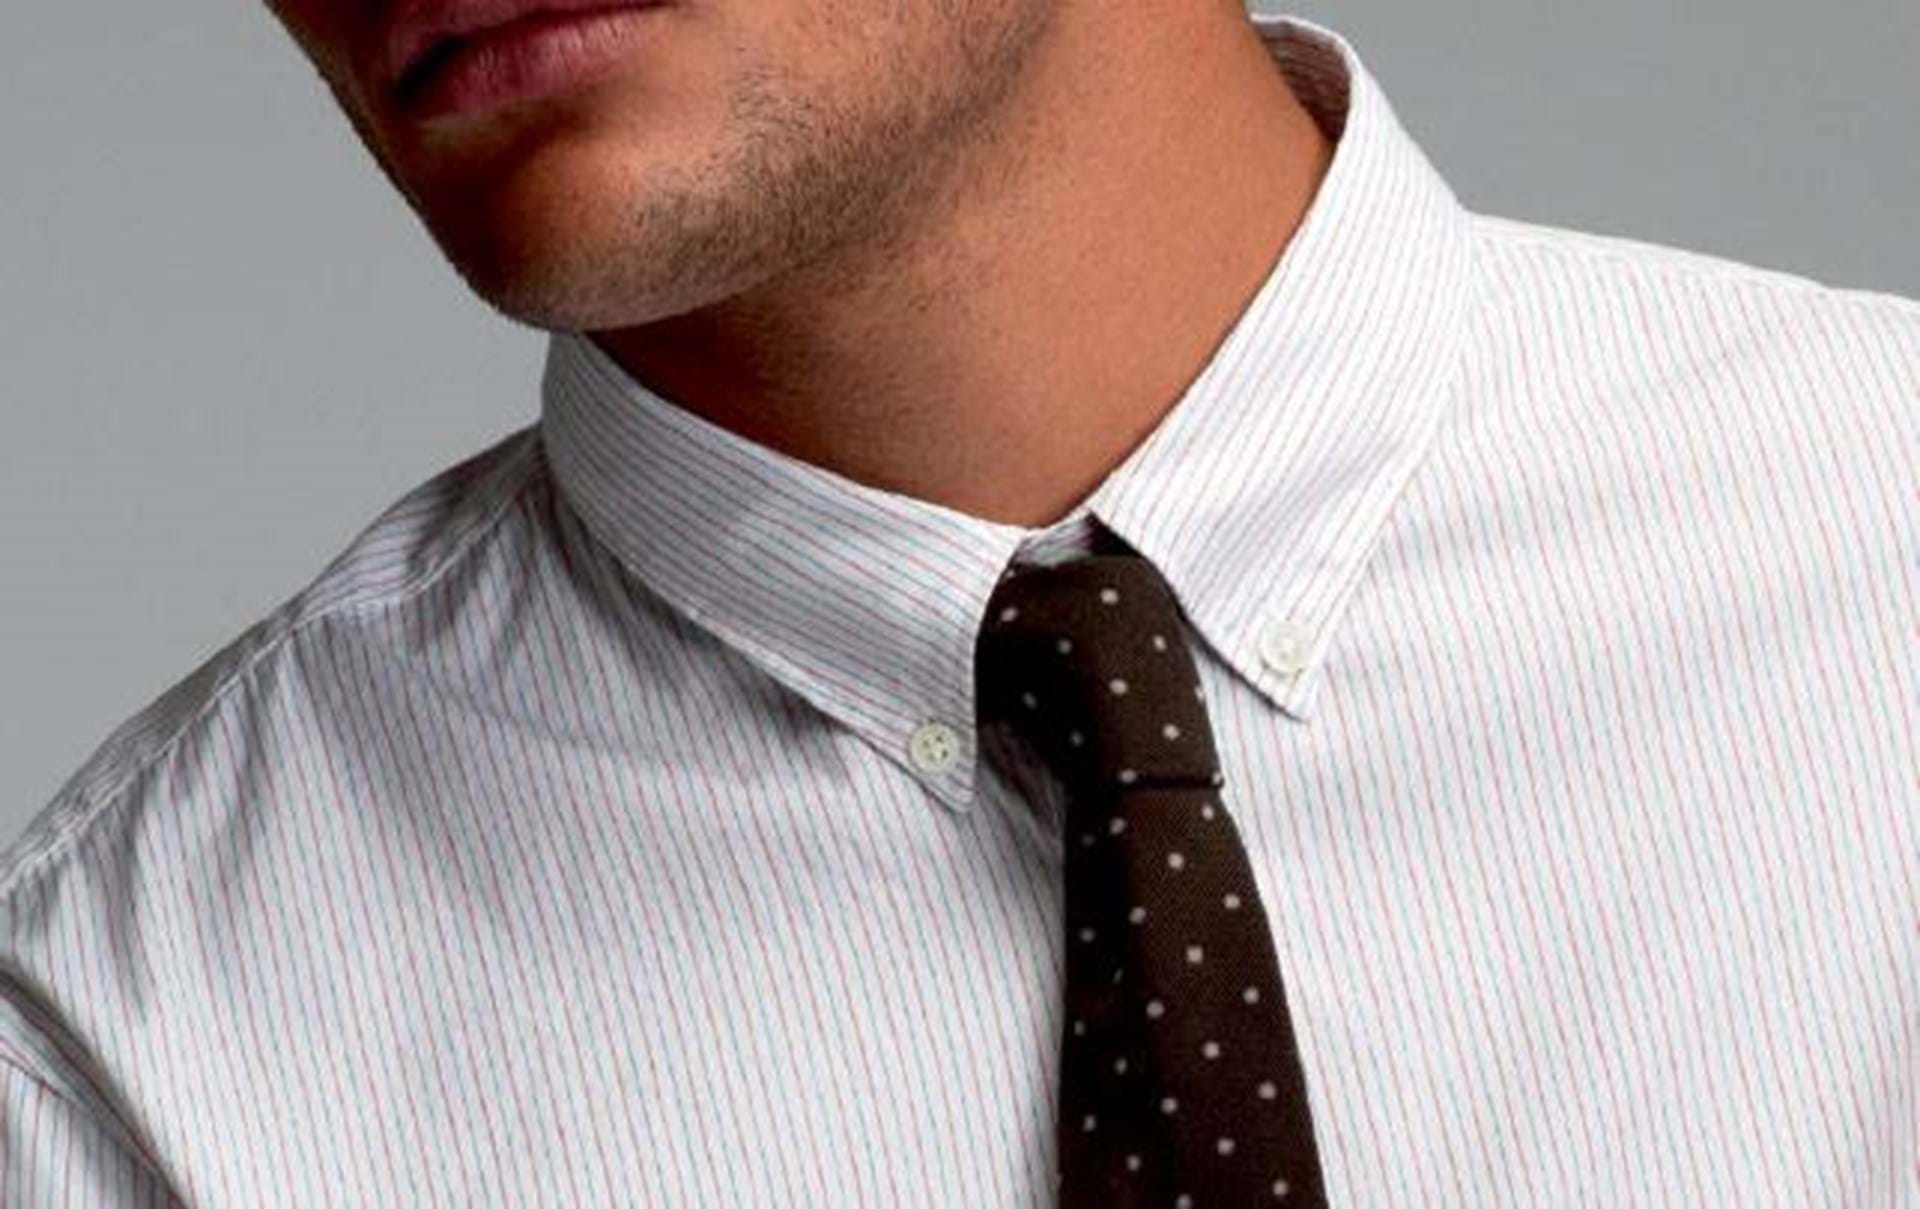 Køre ud Afvige Mitt Klassisk stil: Sådan finder du den perfekte skjorte - Euroman